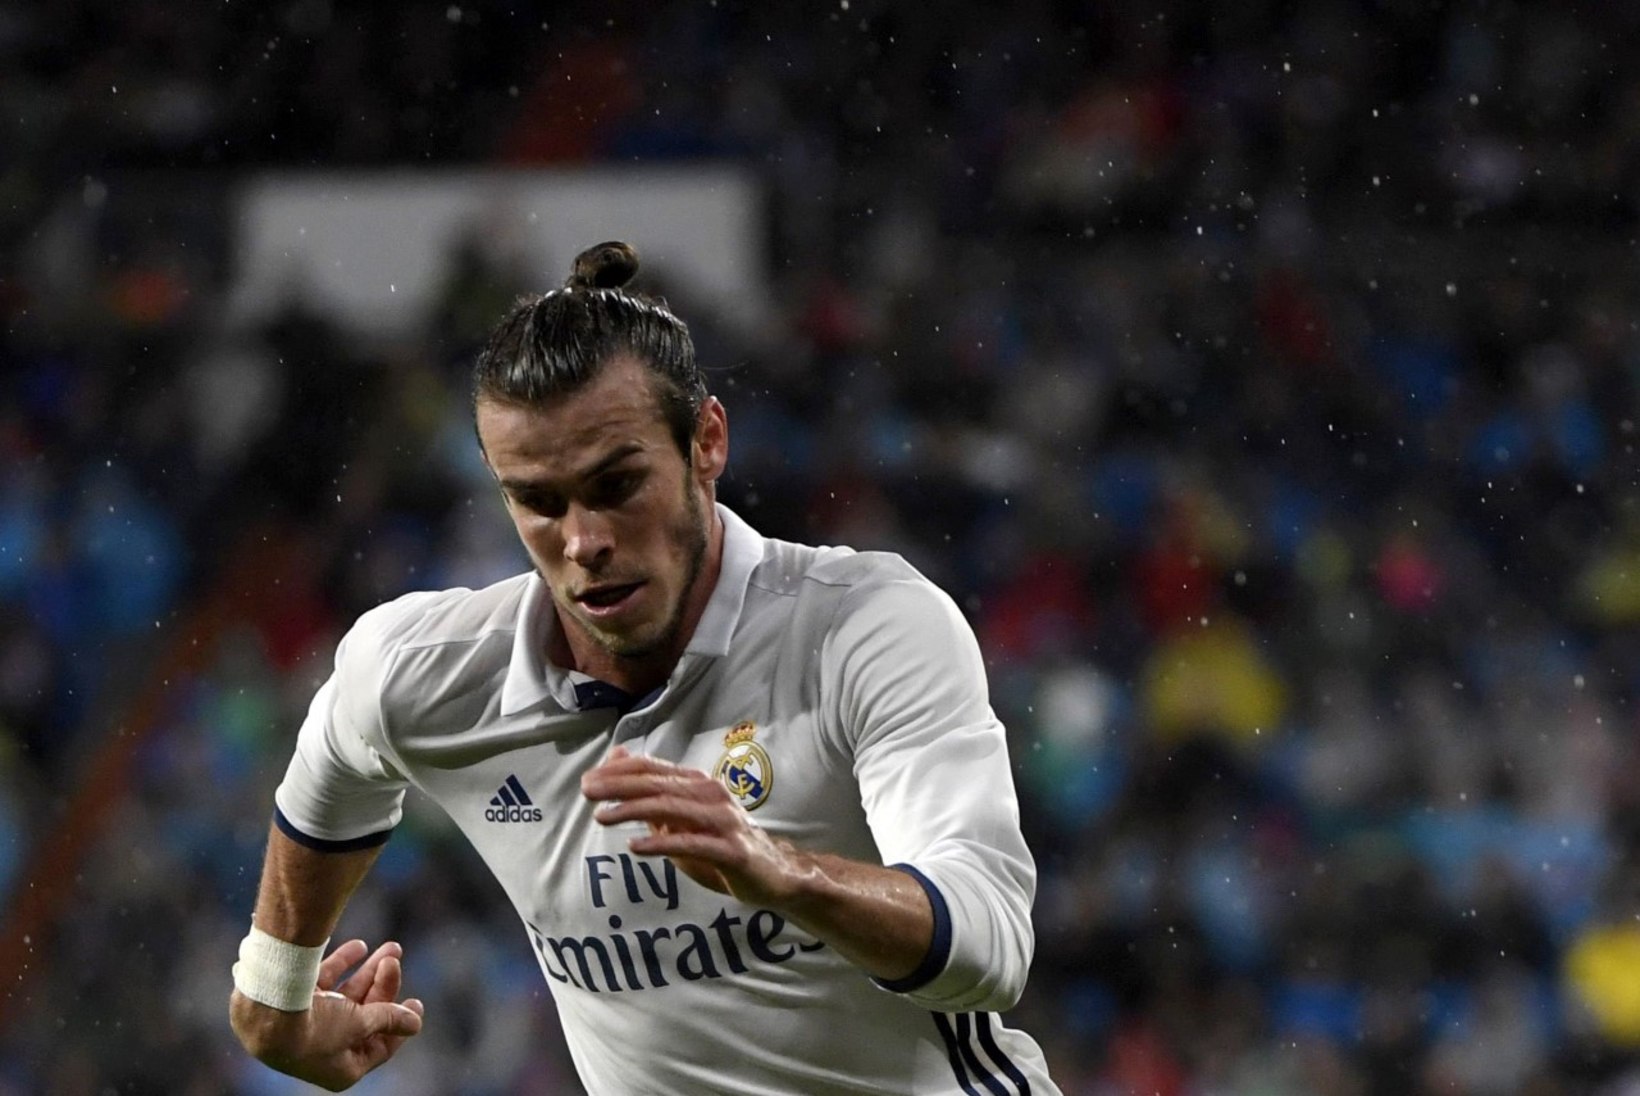 MÜSTILISED SUMMAD! Gareth Bale'ist saab maailma enimteeniv jalgpallur